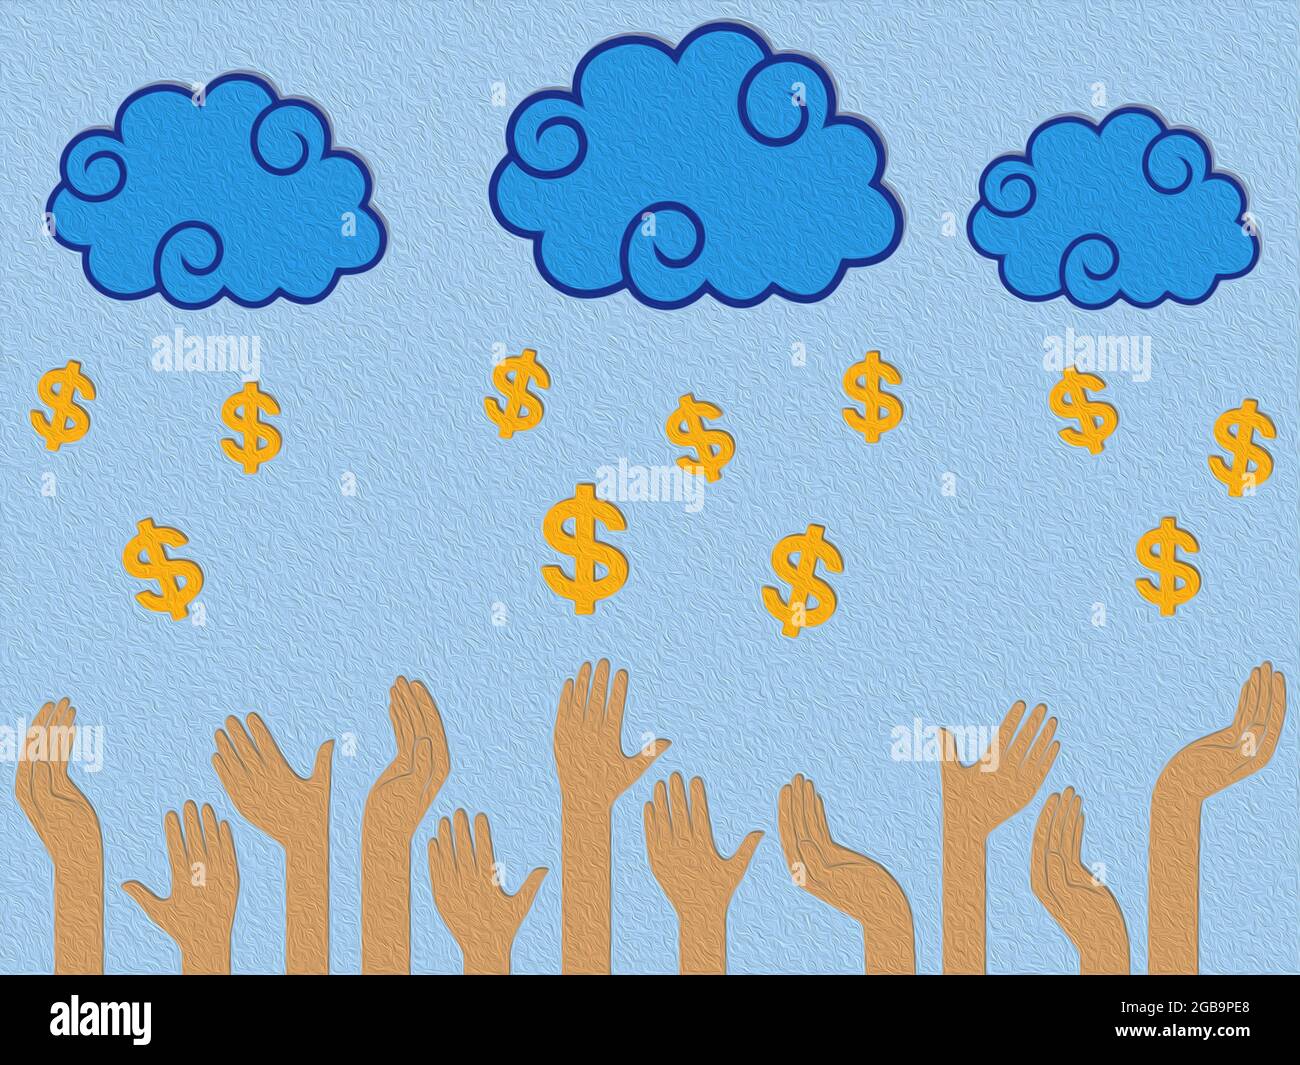 Dollar argent tombant des nuages dans les mains humaines, illustration stylisée conceptuelle colorée Banque D'Images